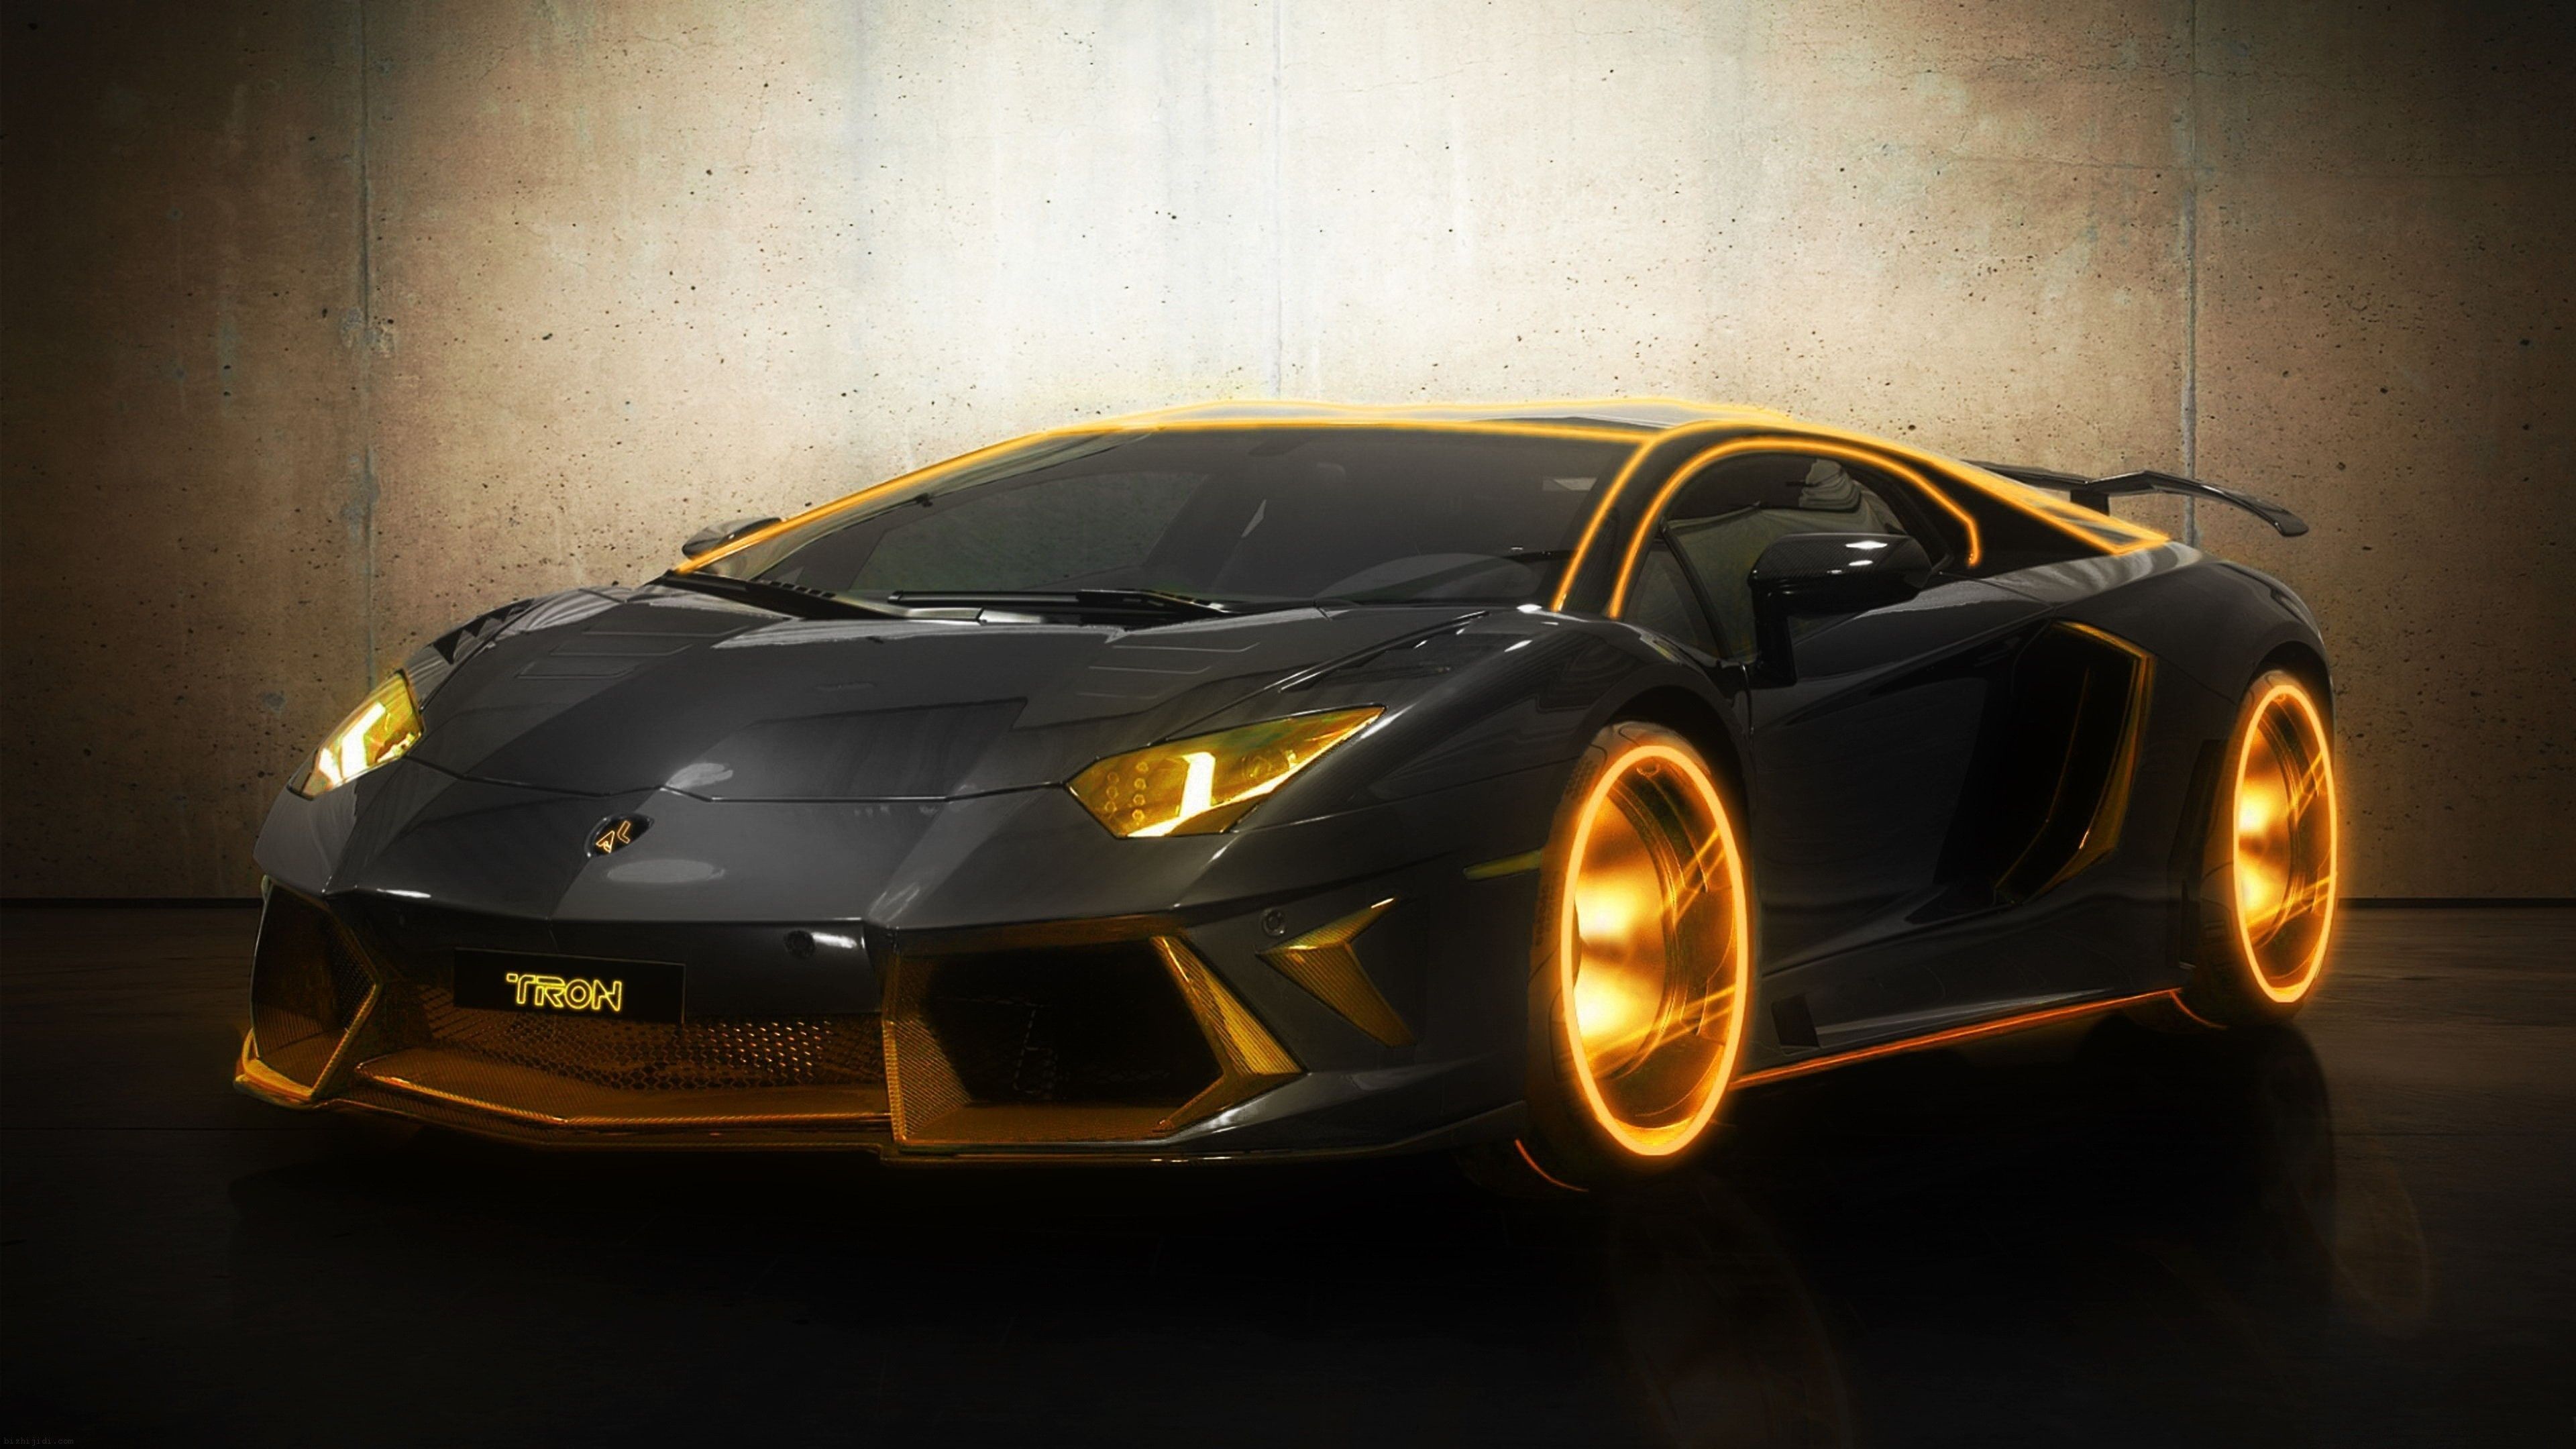 Nhiều lựa chọn với Lamborghini background gold Đẹp và đầy sức mạnh